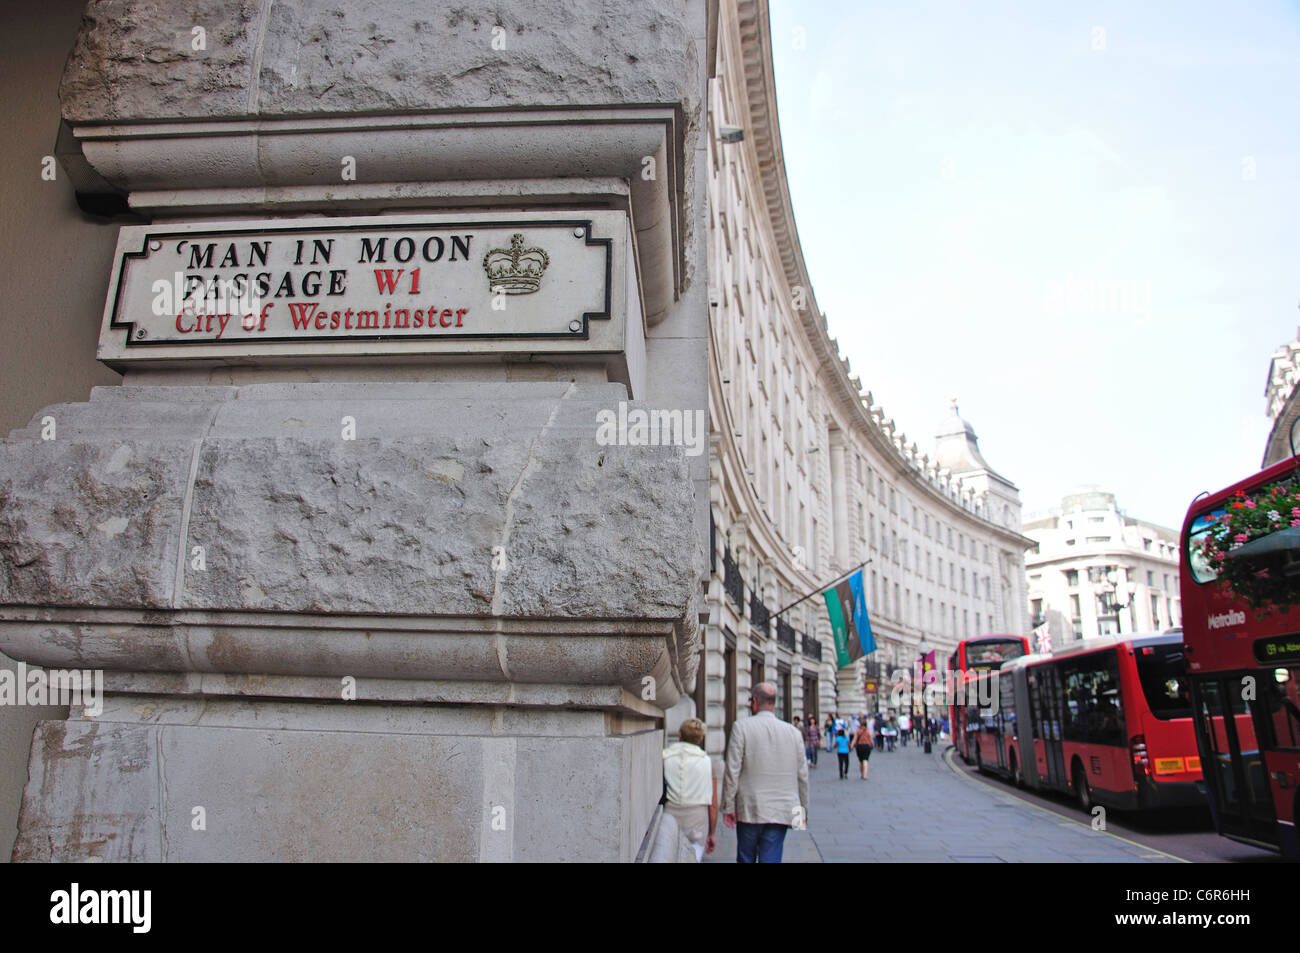 Passage l'homme de la Lune et de Regent Street, West End, City of Westminster, London, Greater London, Angleterre, Royaume-Uni Banque D'Images